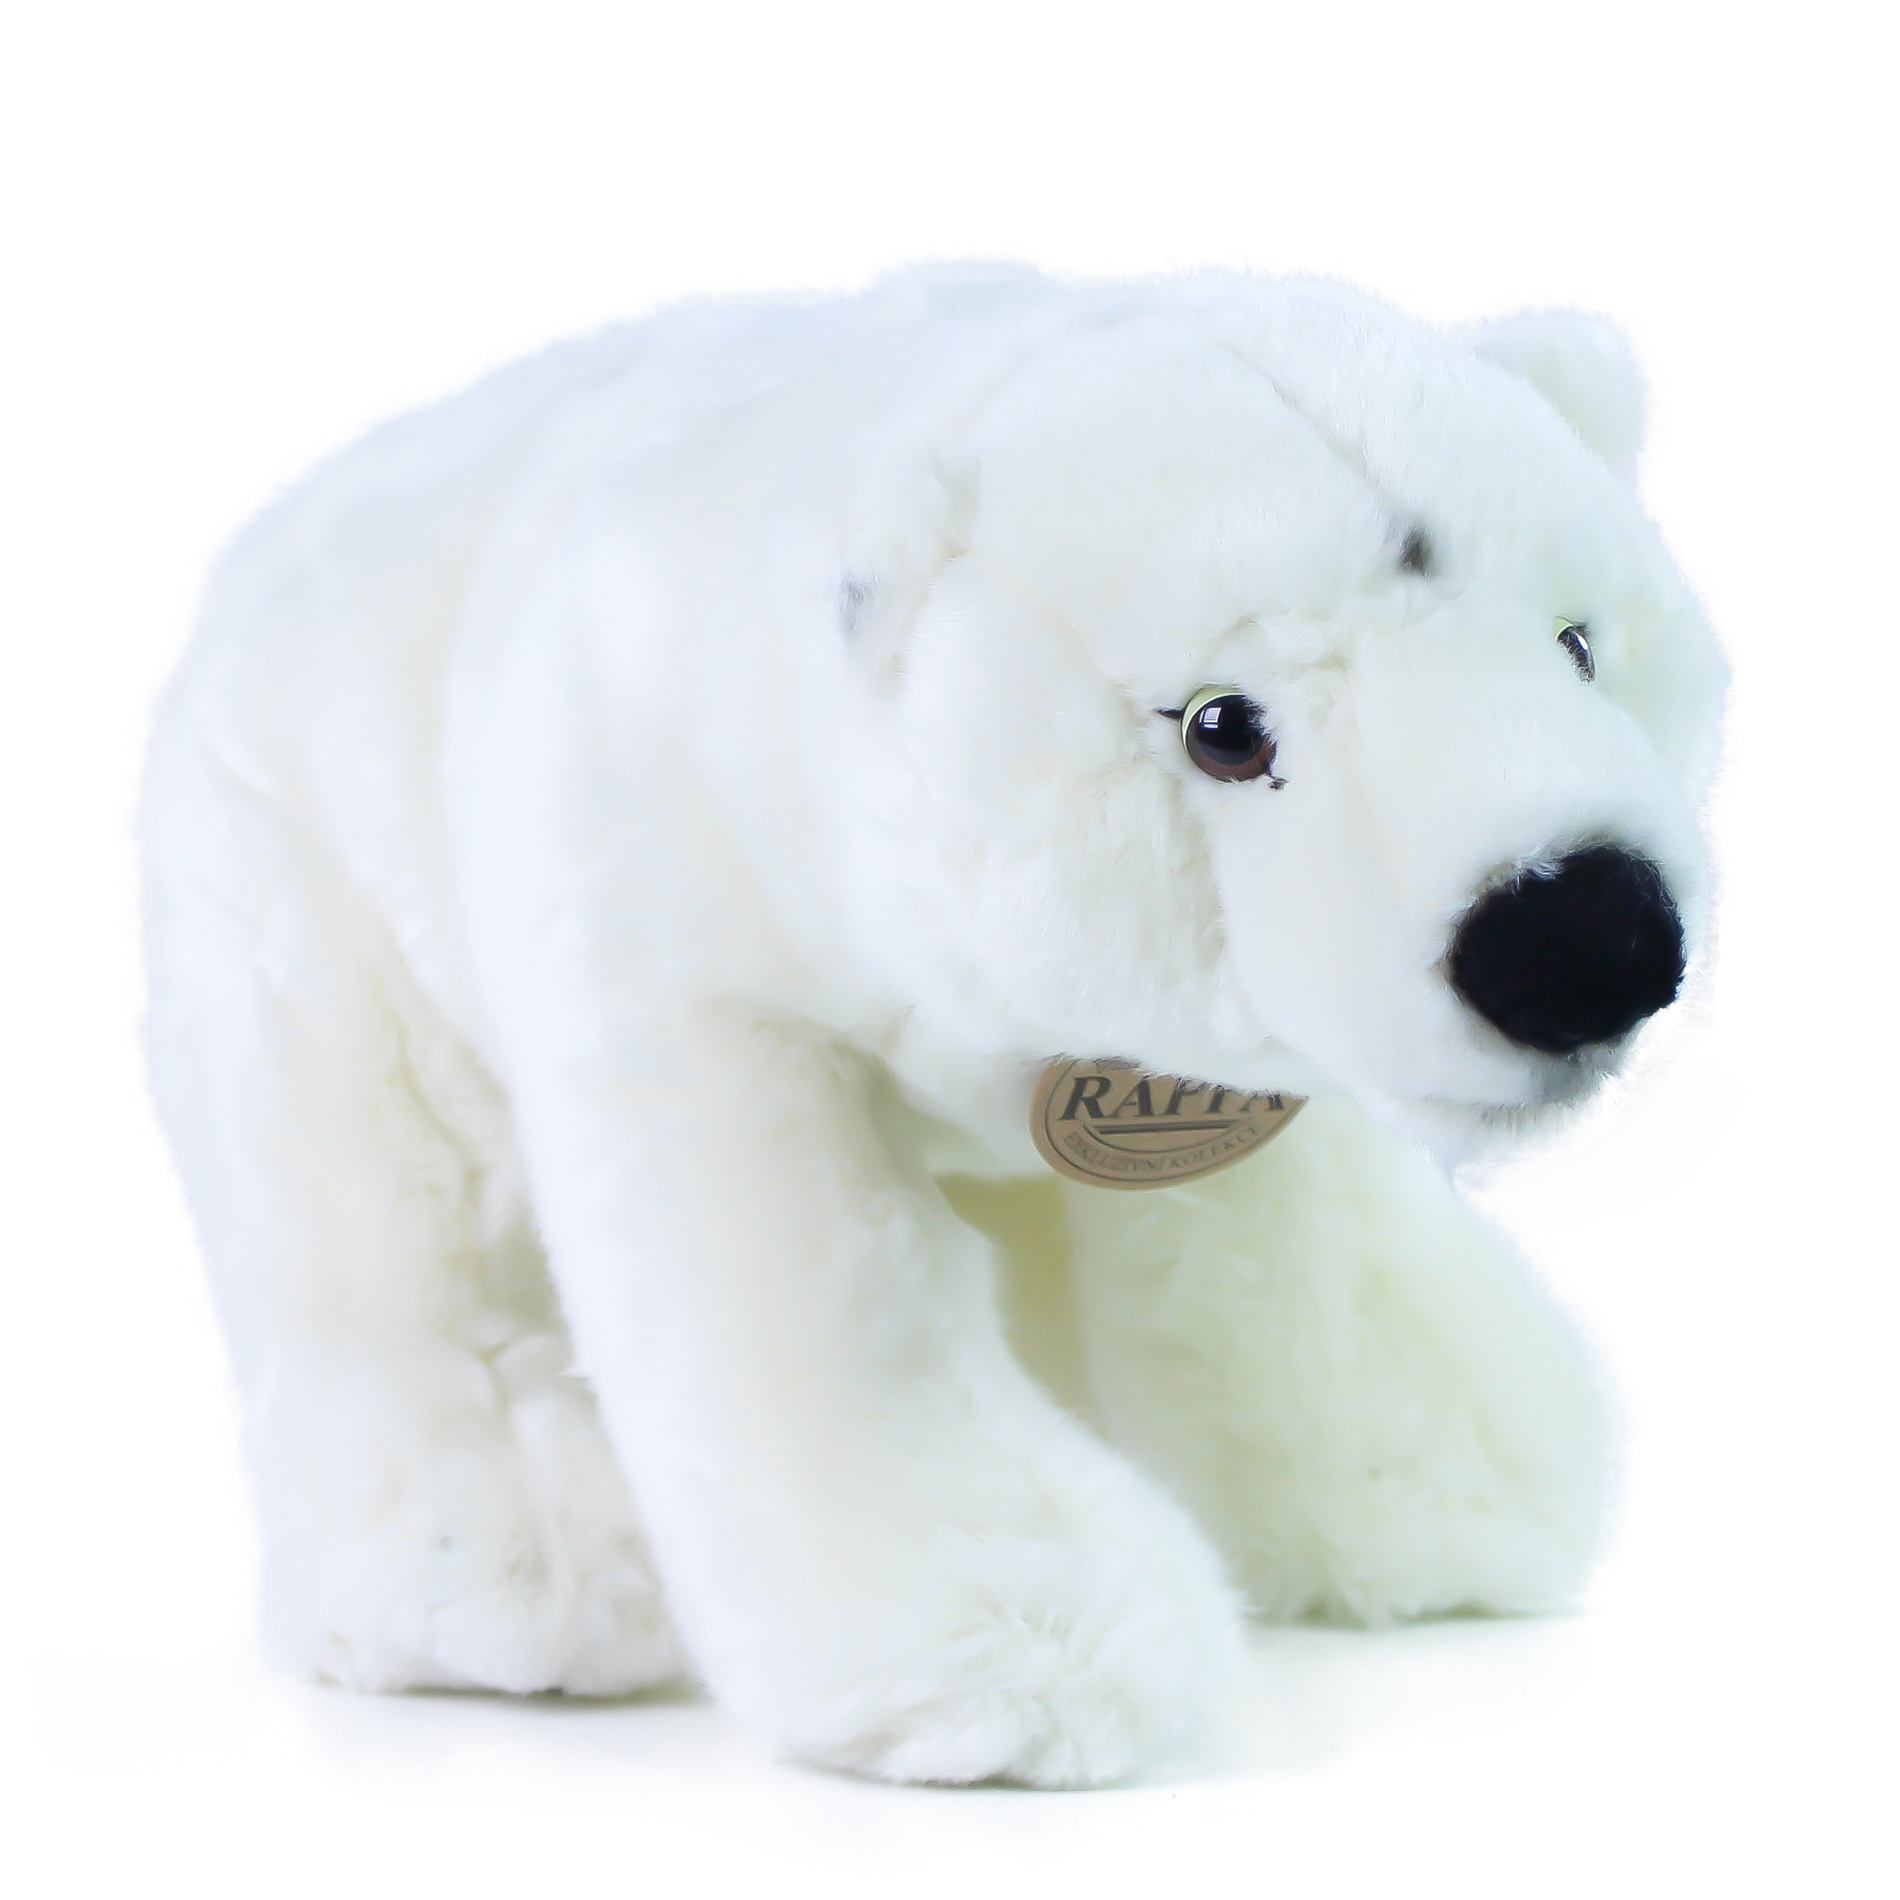 Plyšový lední medvěd 30 cm